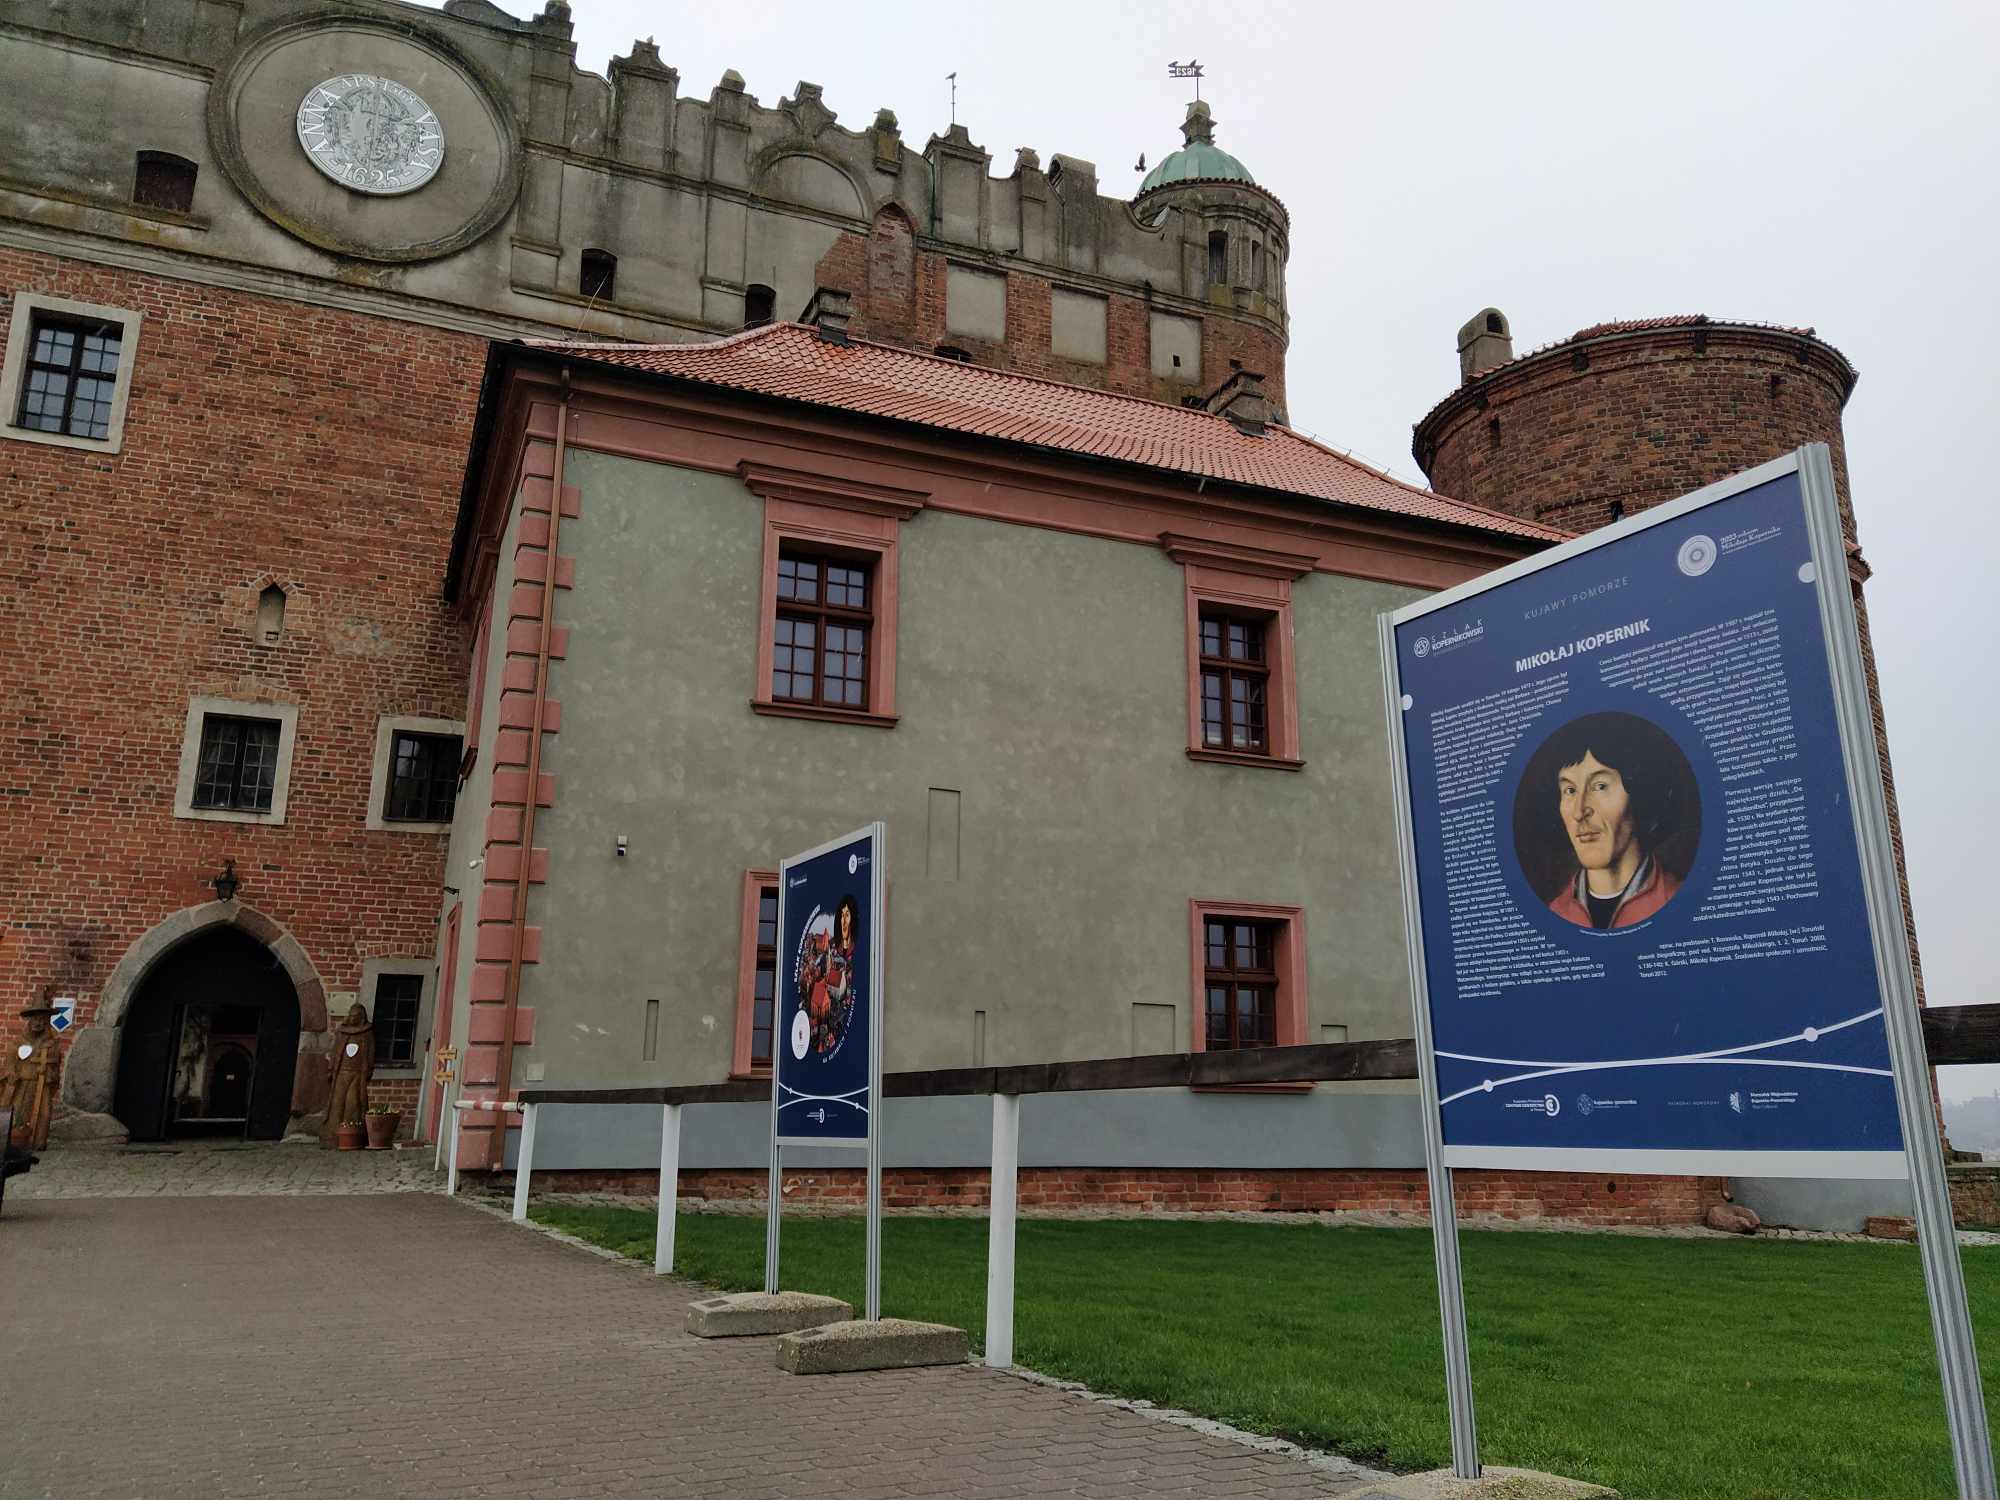 Zdjęcie pokazujące ekspozycję wystawy Szlak Kopernikowski na Kujawach i Pomorzu w Ciechocinku